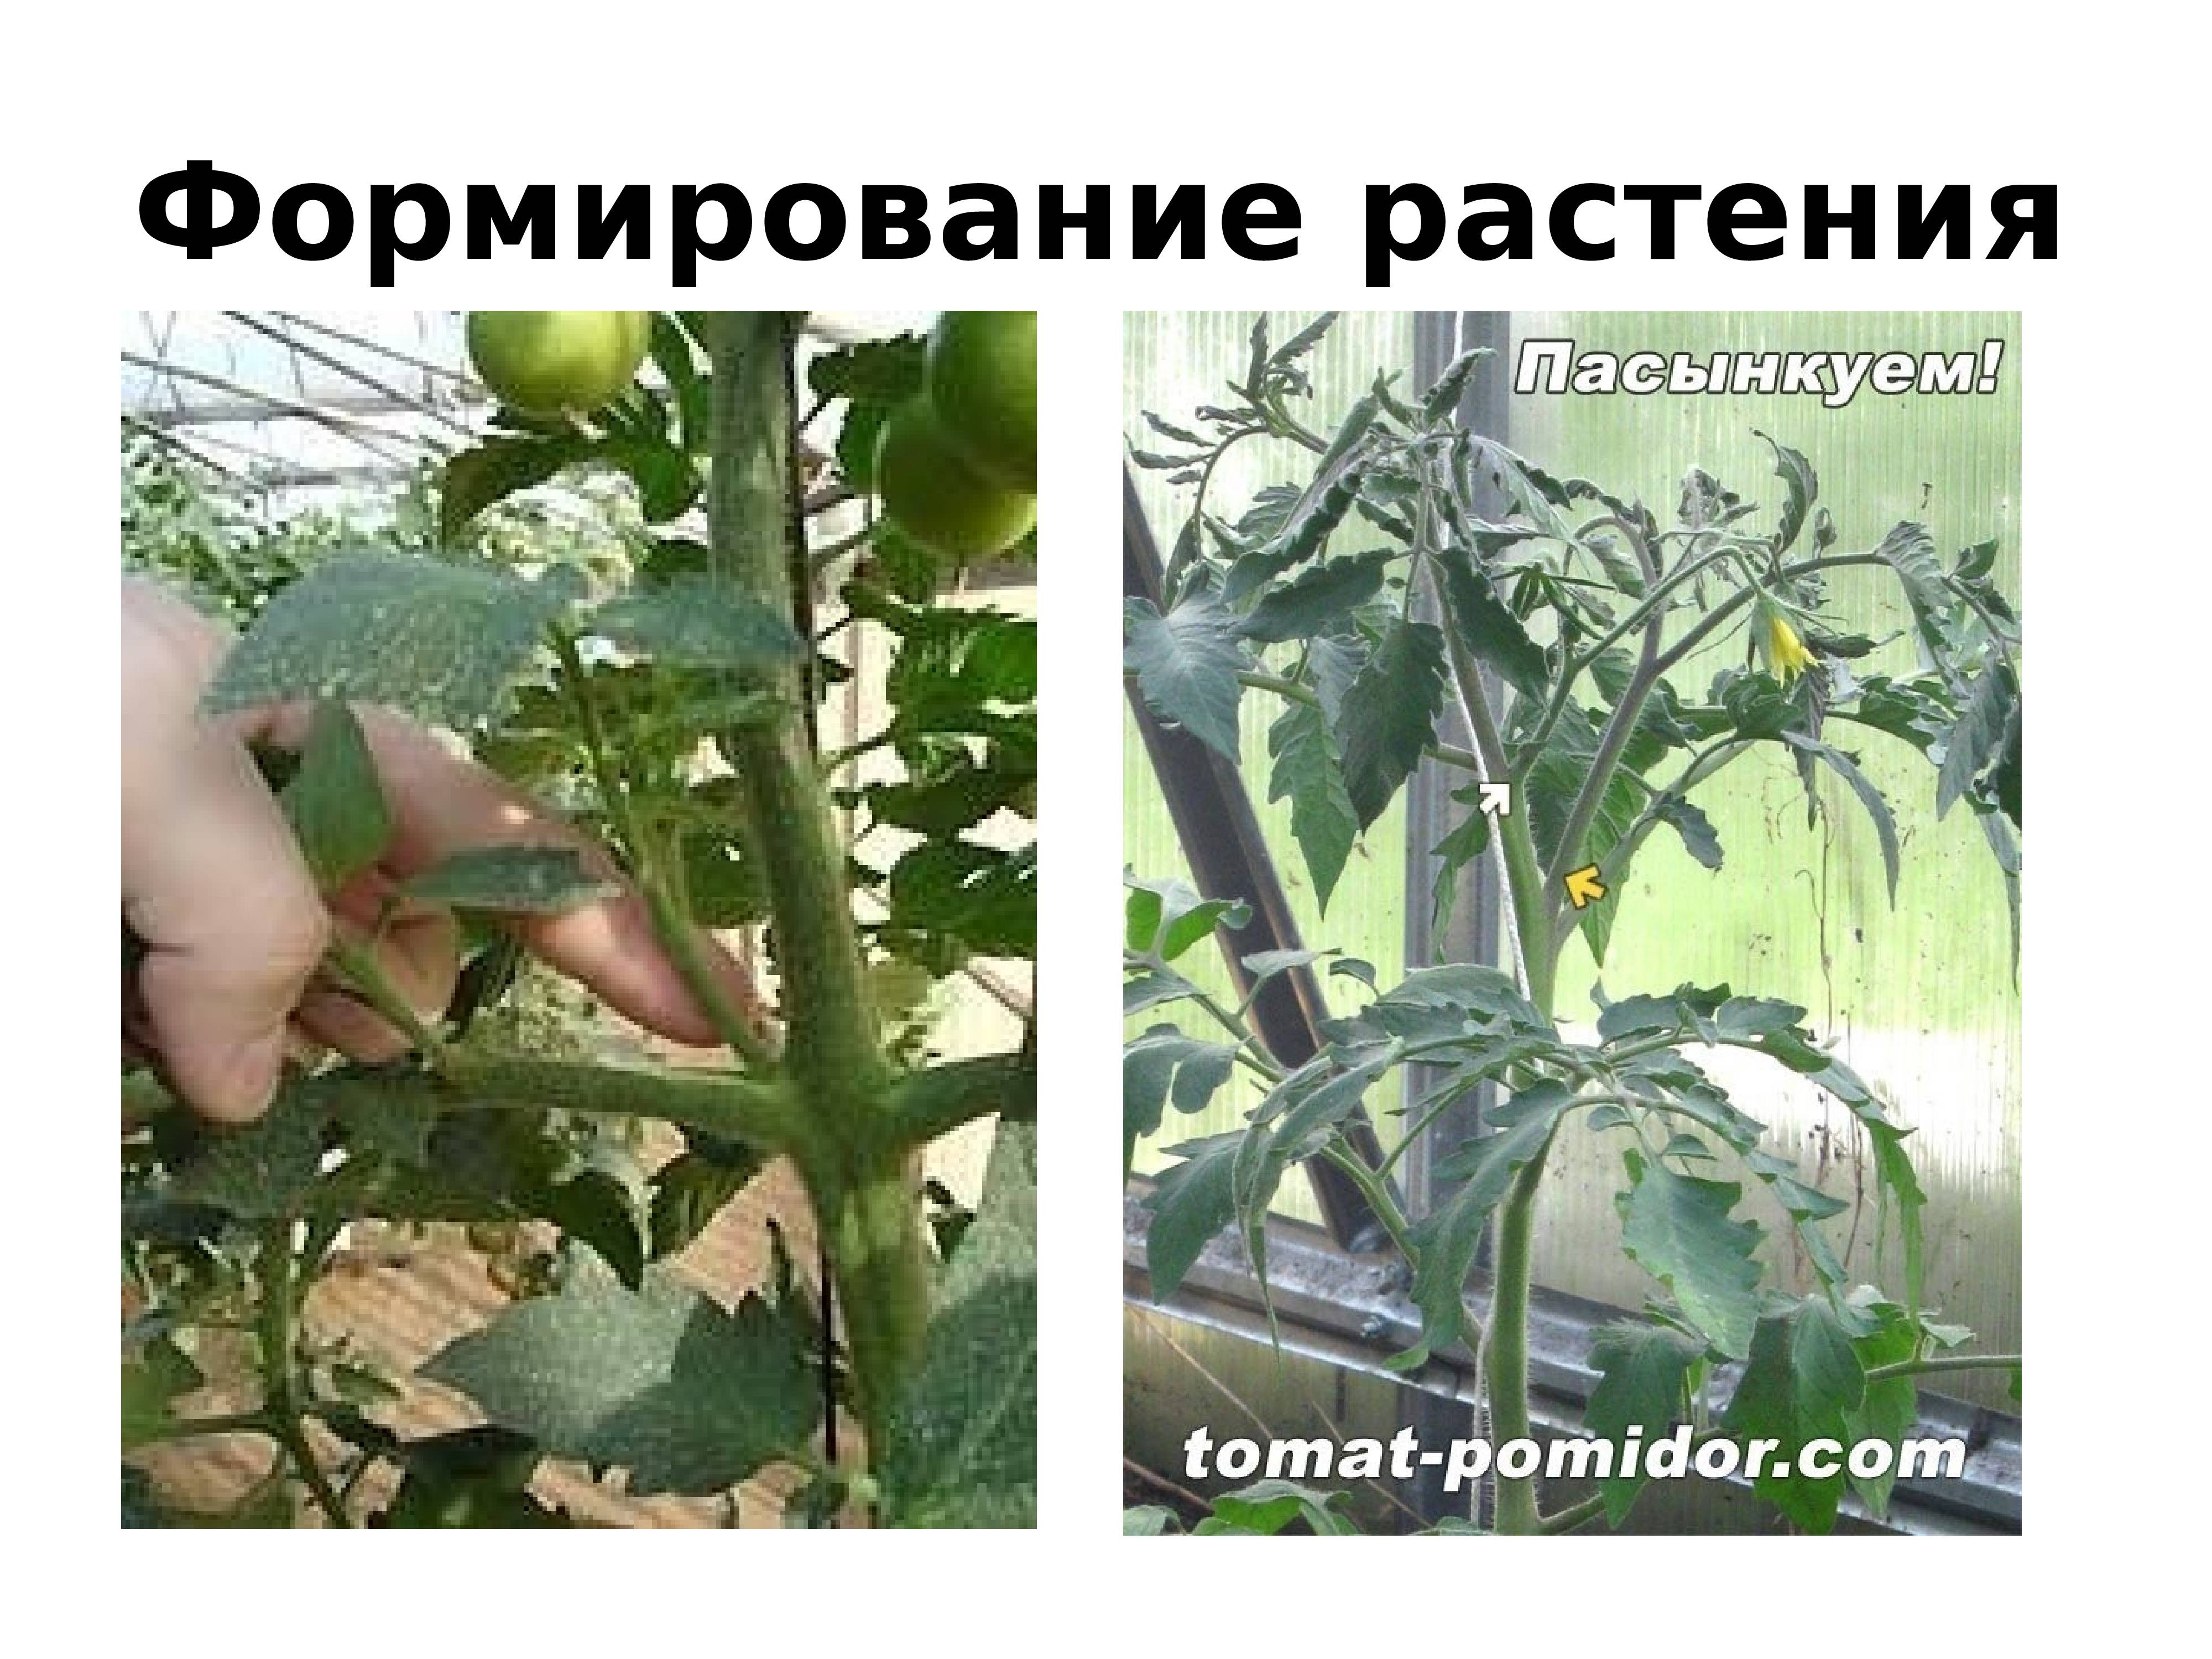 Как формировать томаты в открытом грунте пошаговое фото